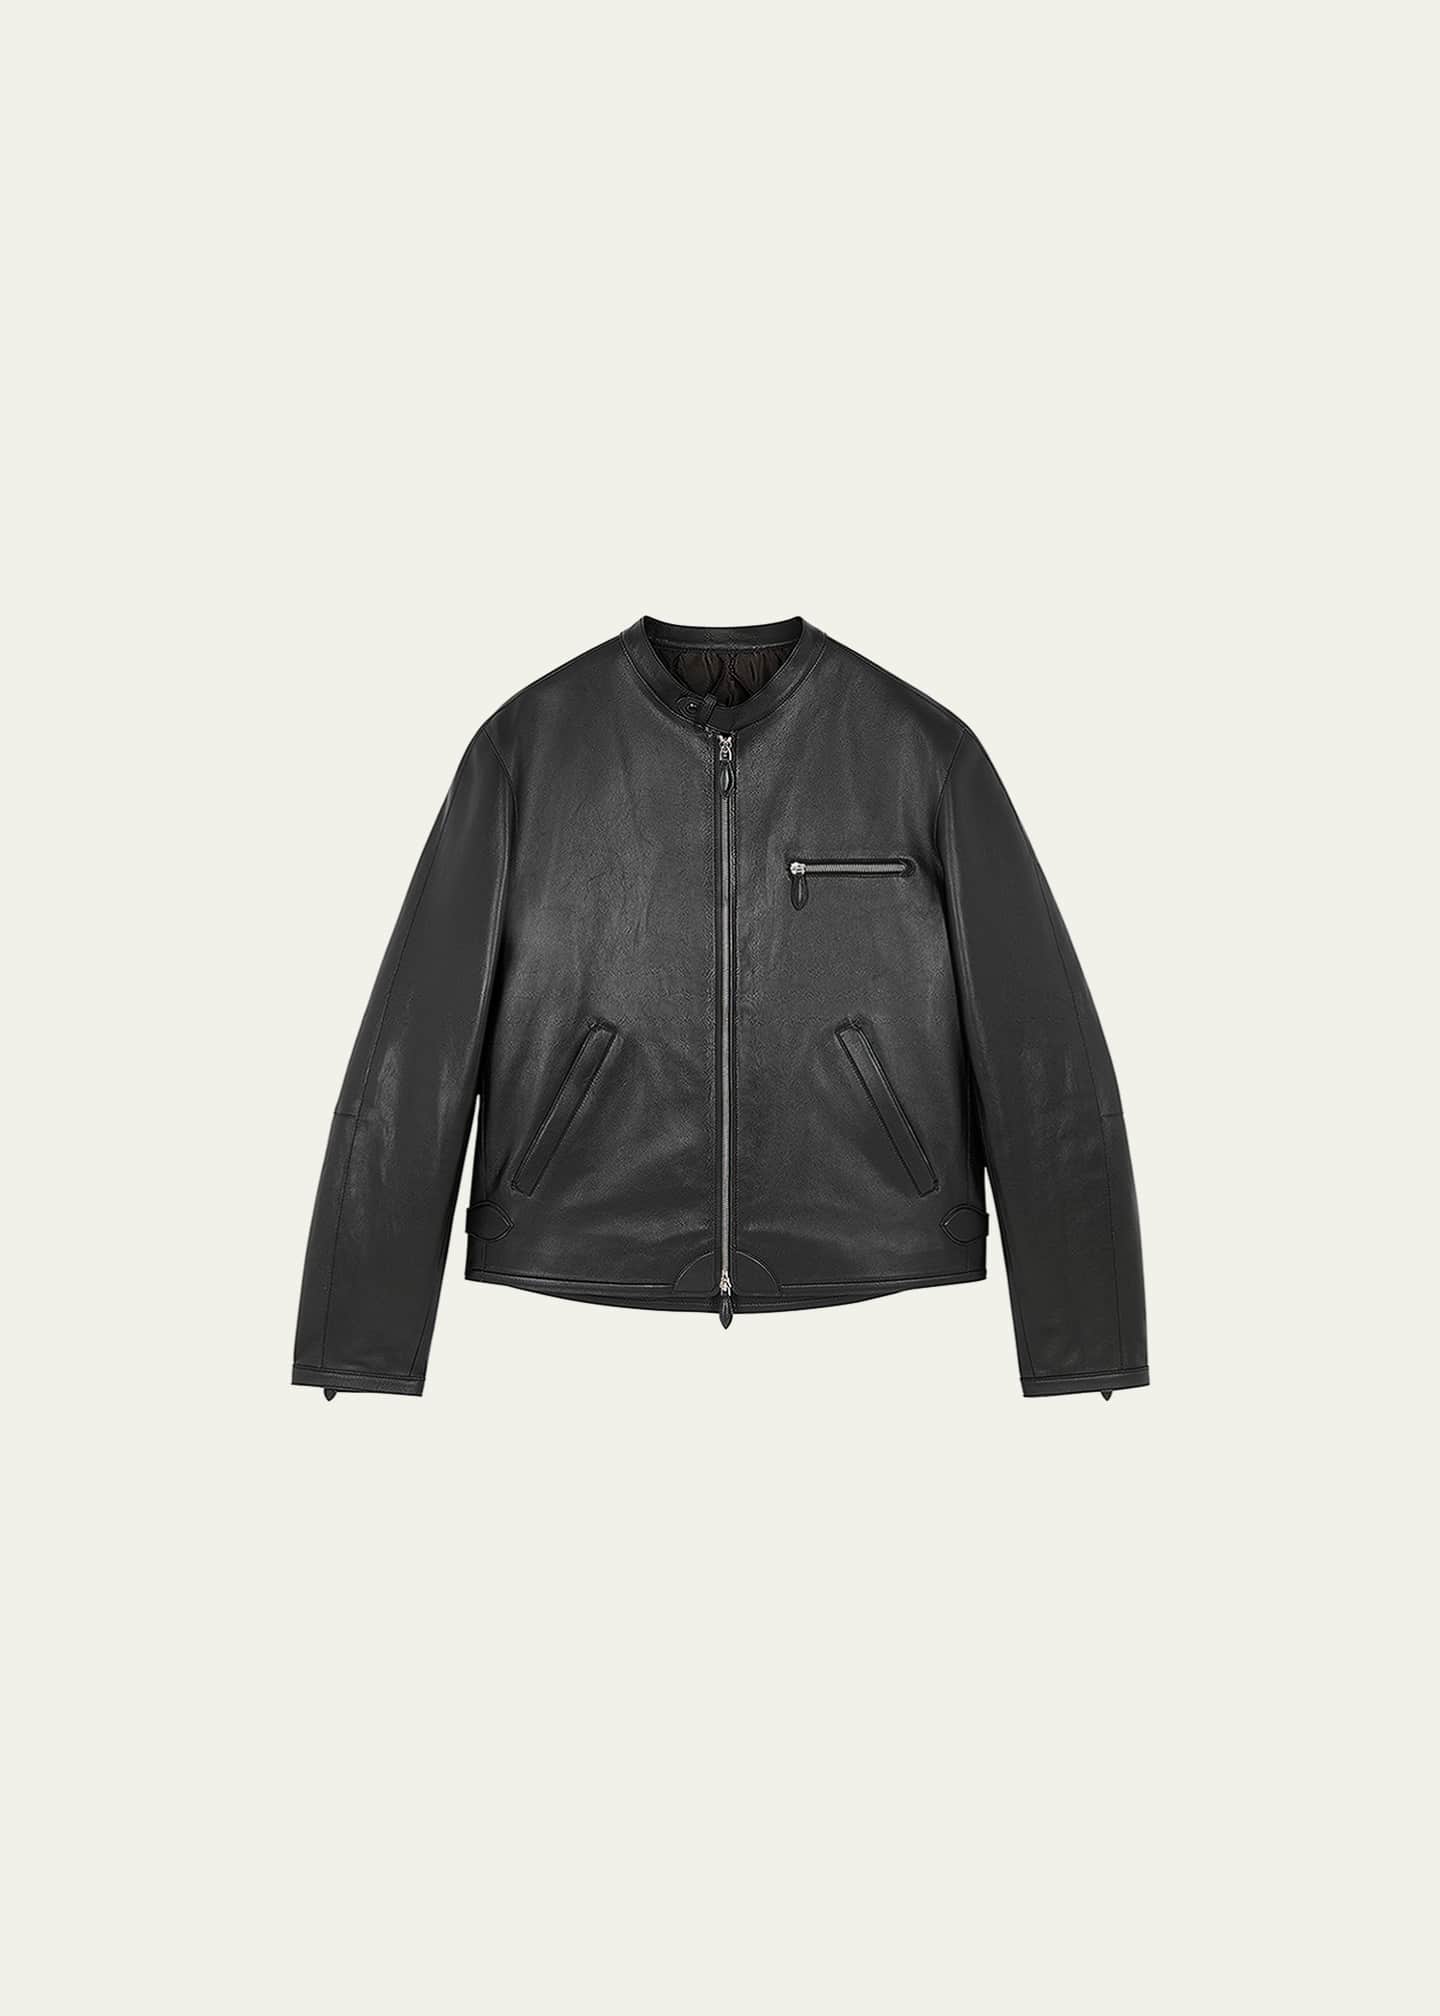 Berluti Men's Grained Leather Biker Jacket - Bergdorf Goodman